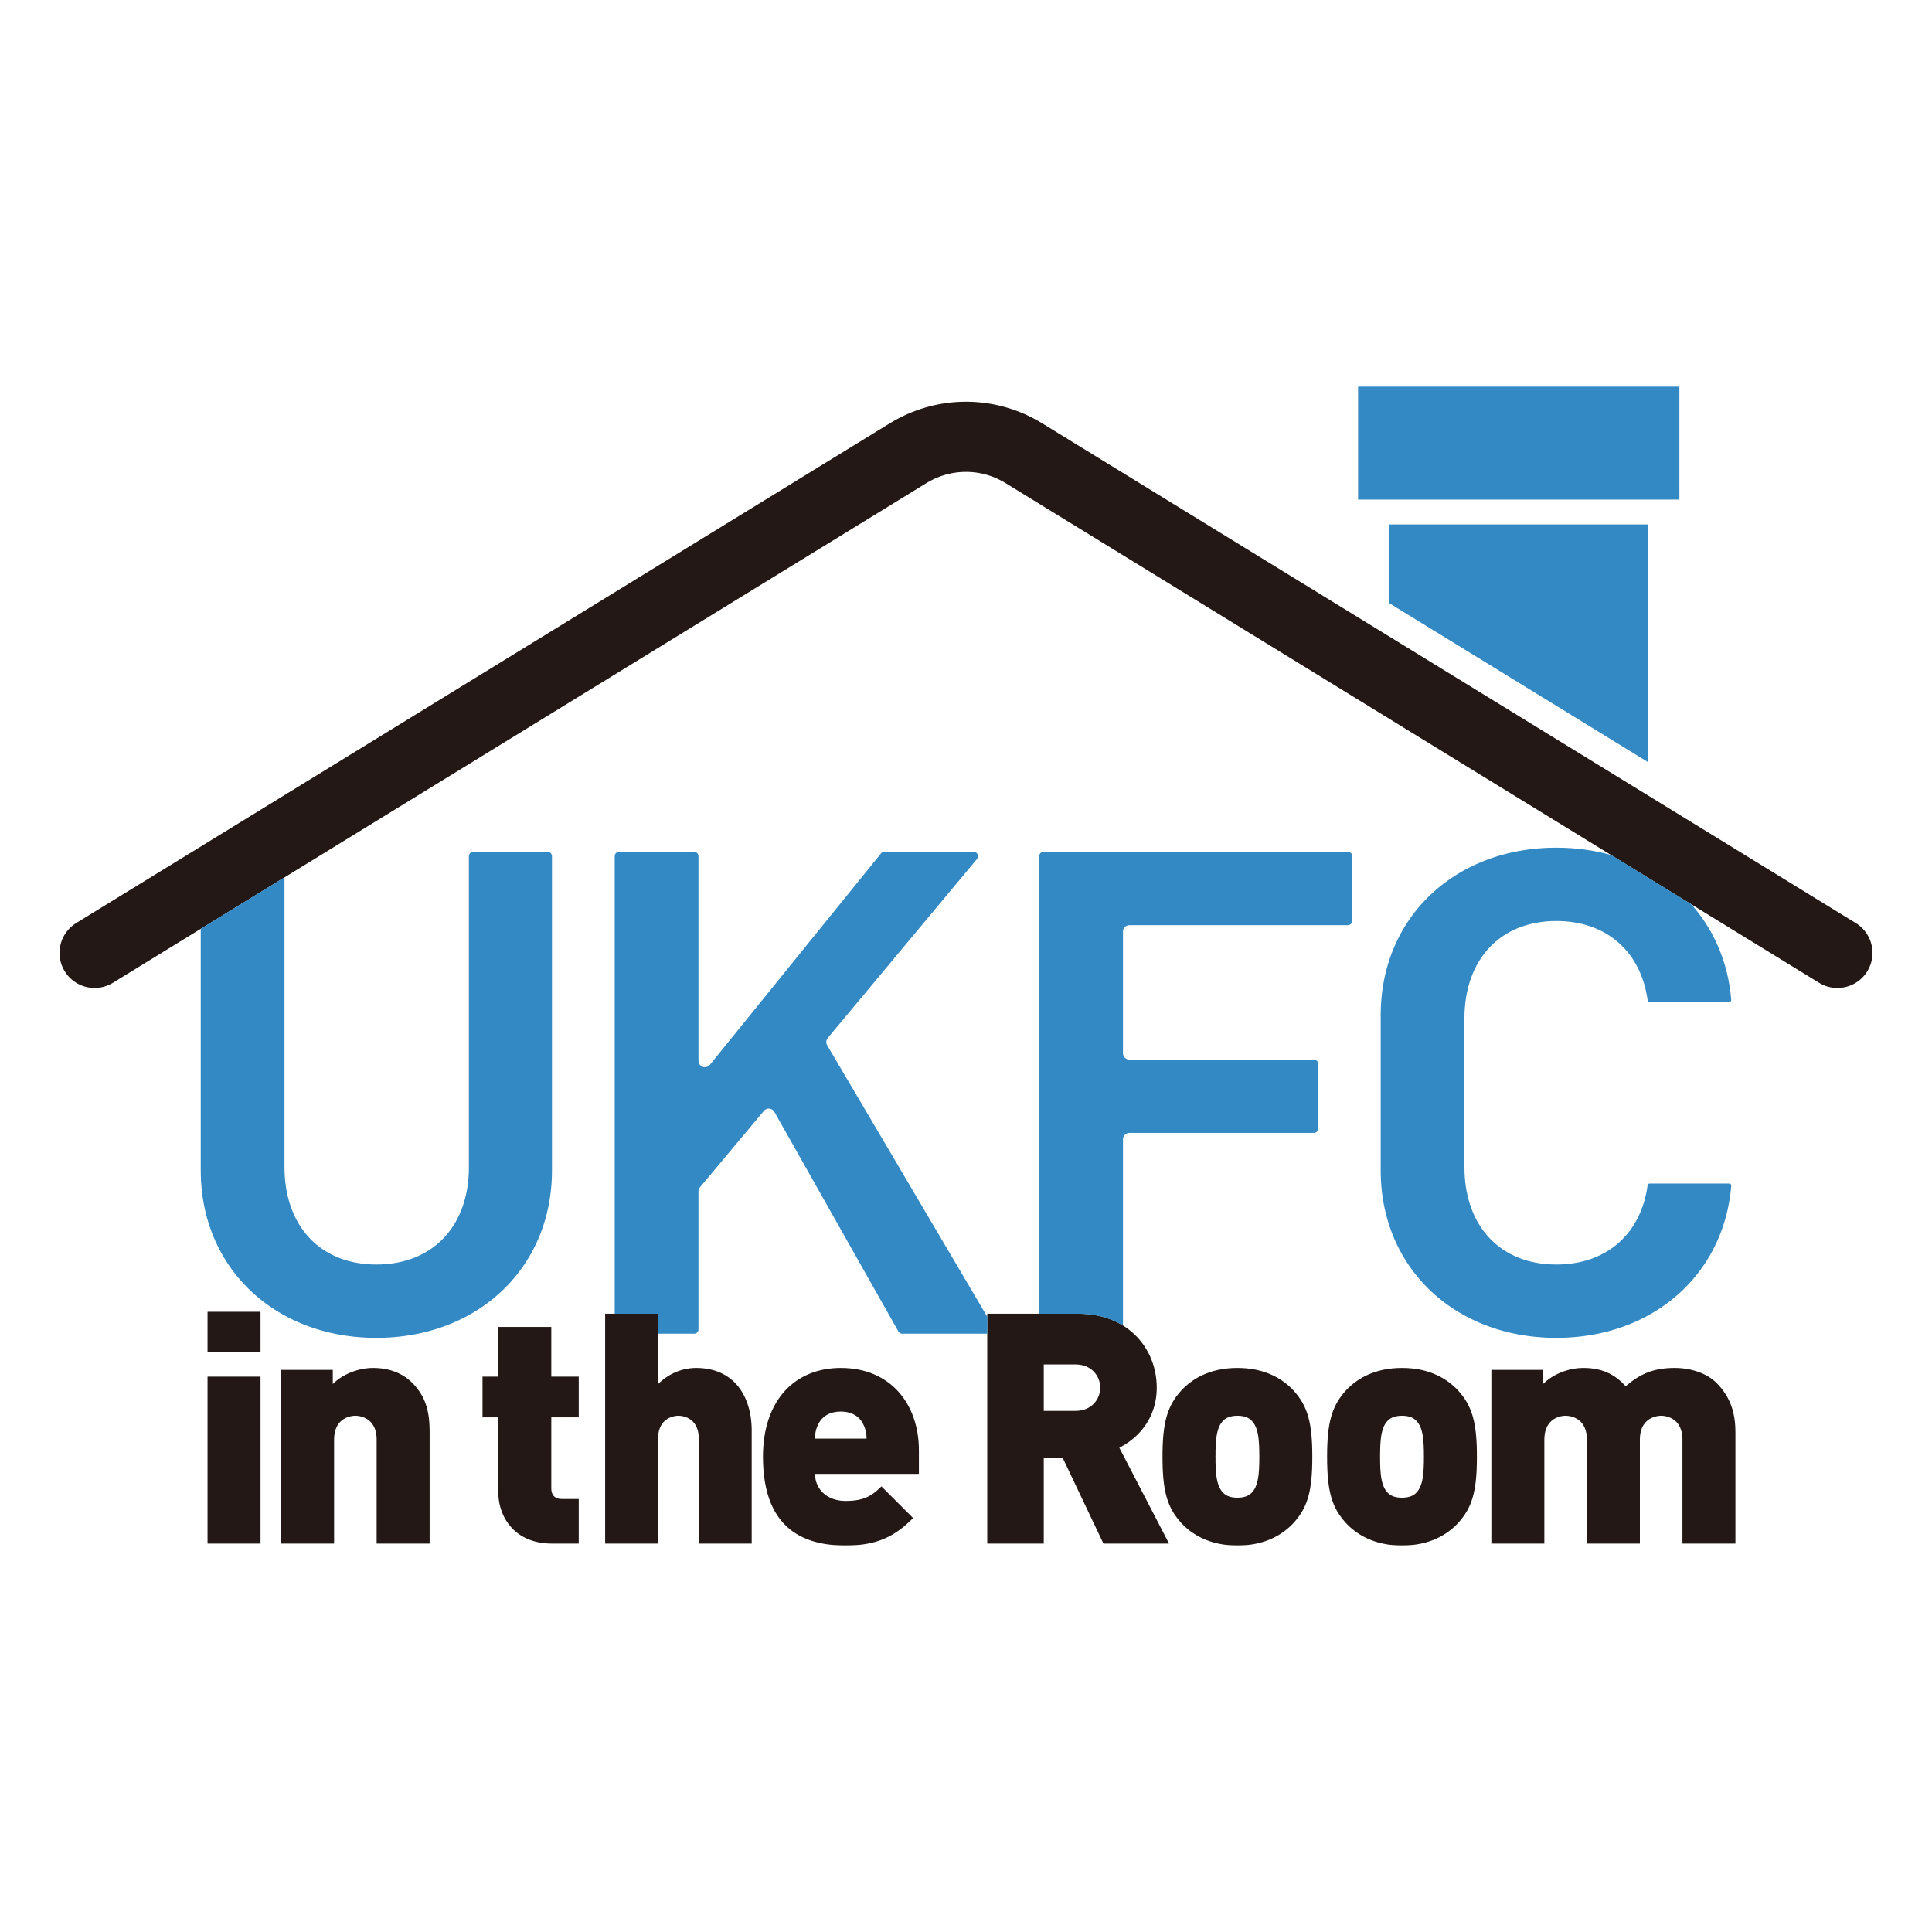 UKFCintheroom_logo